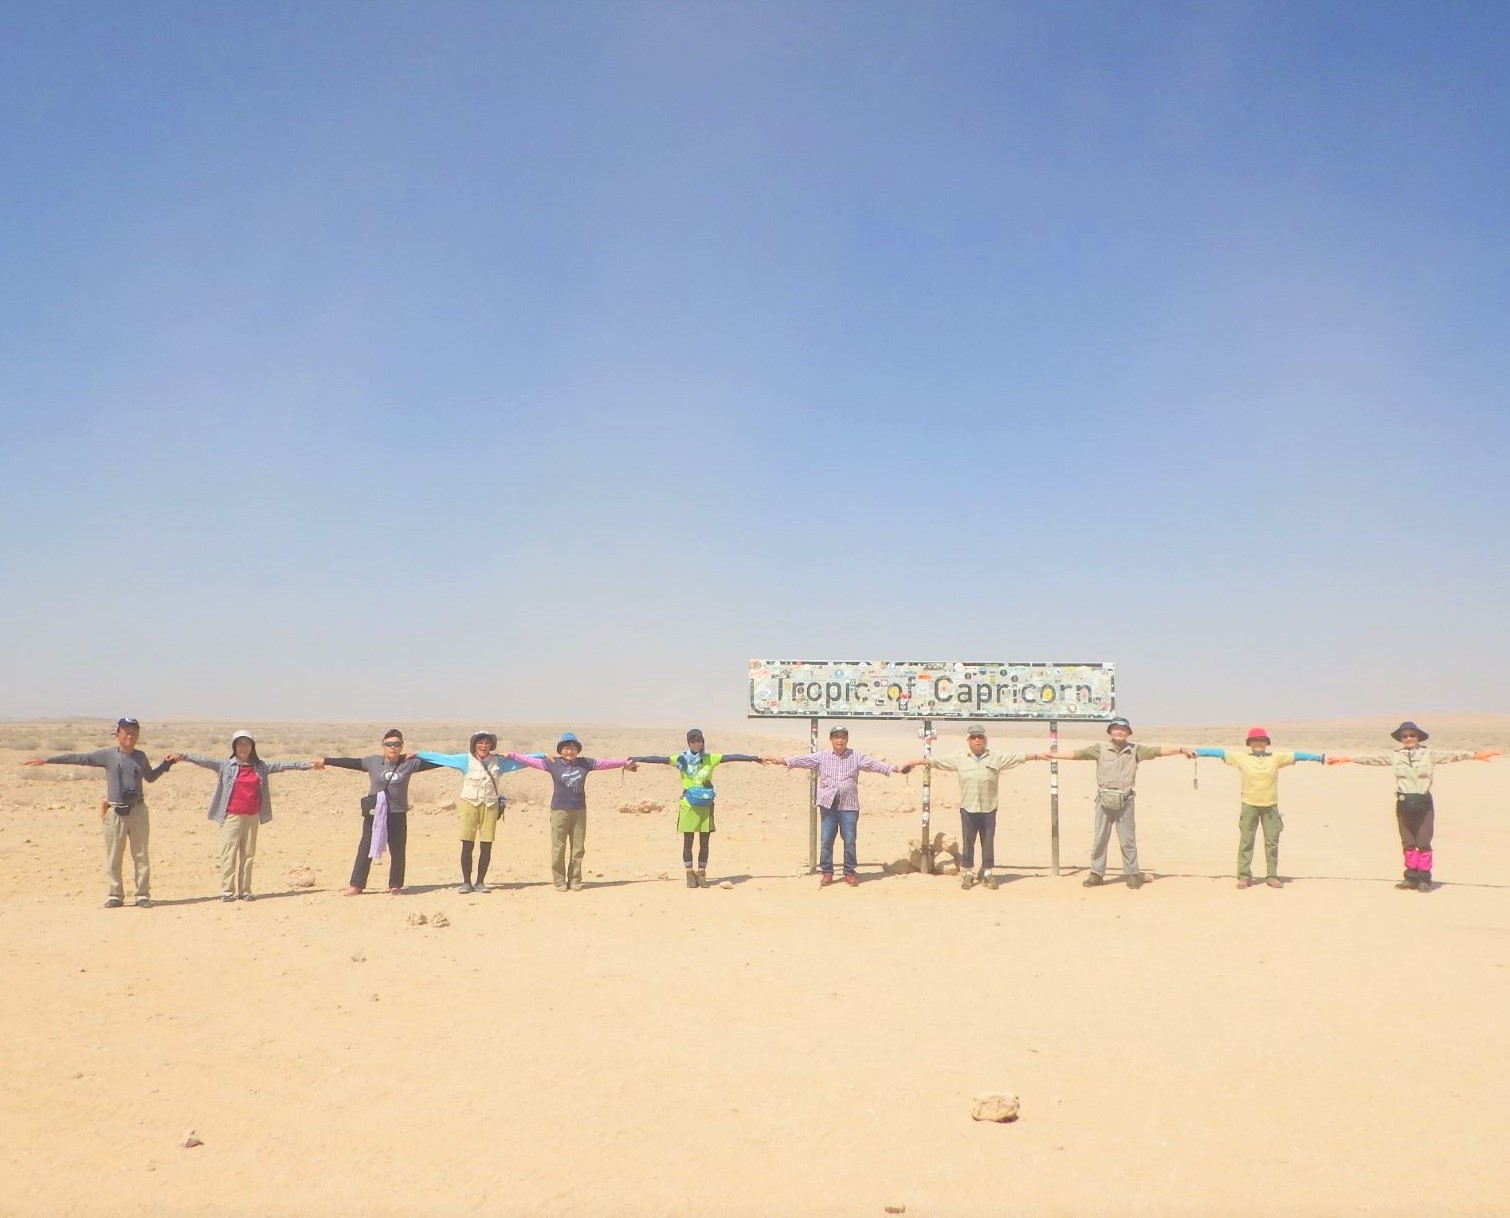 8月27日出発「南部アフリカ周遊ハイキング ナミブ砂漠セスリエムキャンプと花の楽園ナマクワランド 12日間」